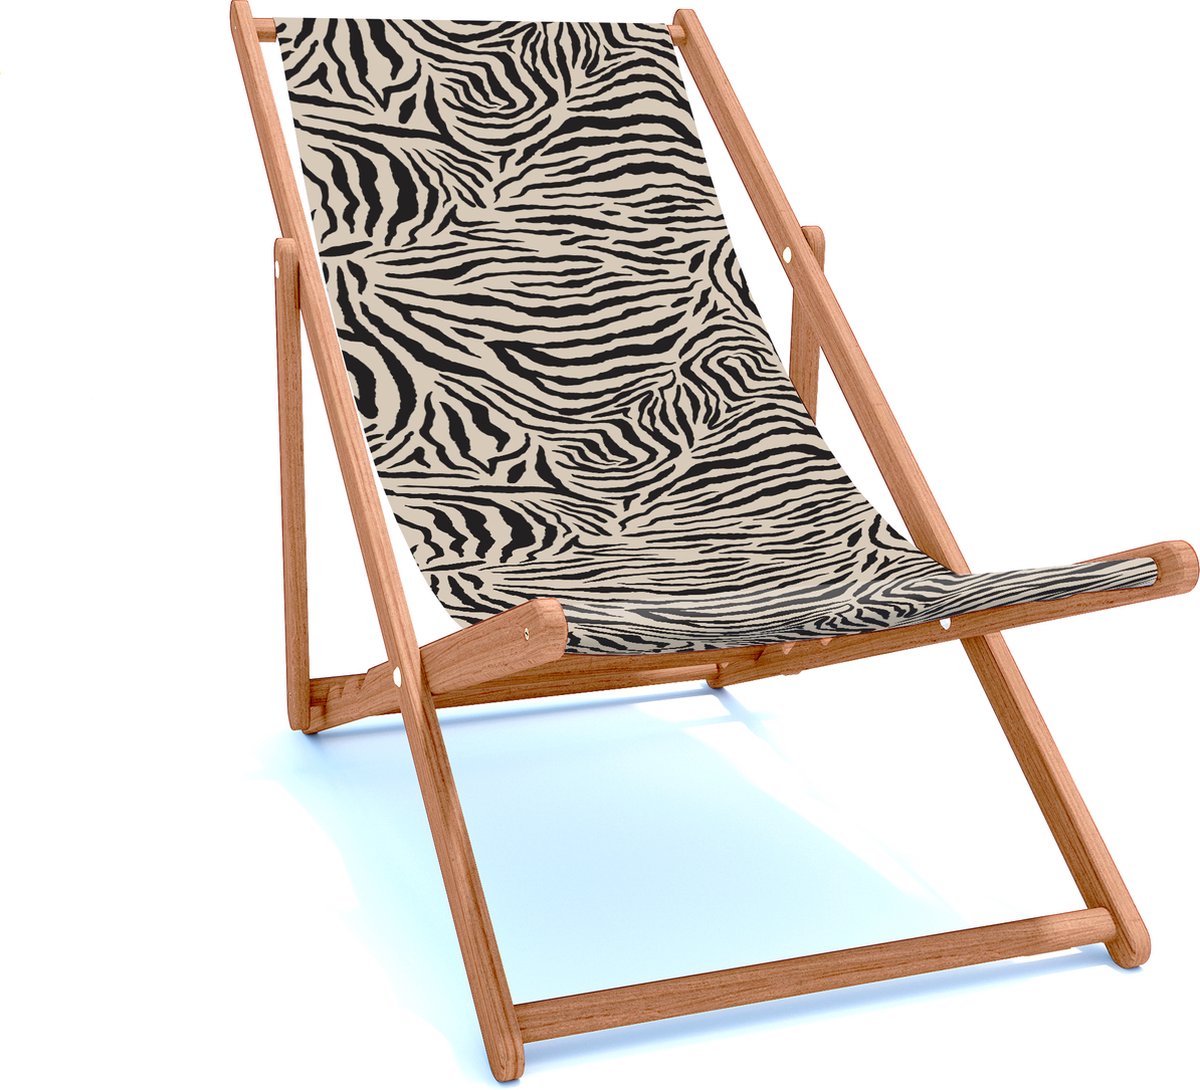 Holtaz Strandstoel Hout Inklapbaar Comfortabele Zonnebed Ligbed met verstelbare Lighoogte houten frame met stoffen Patterns